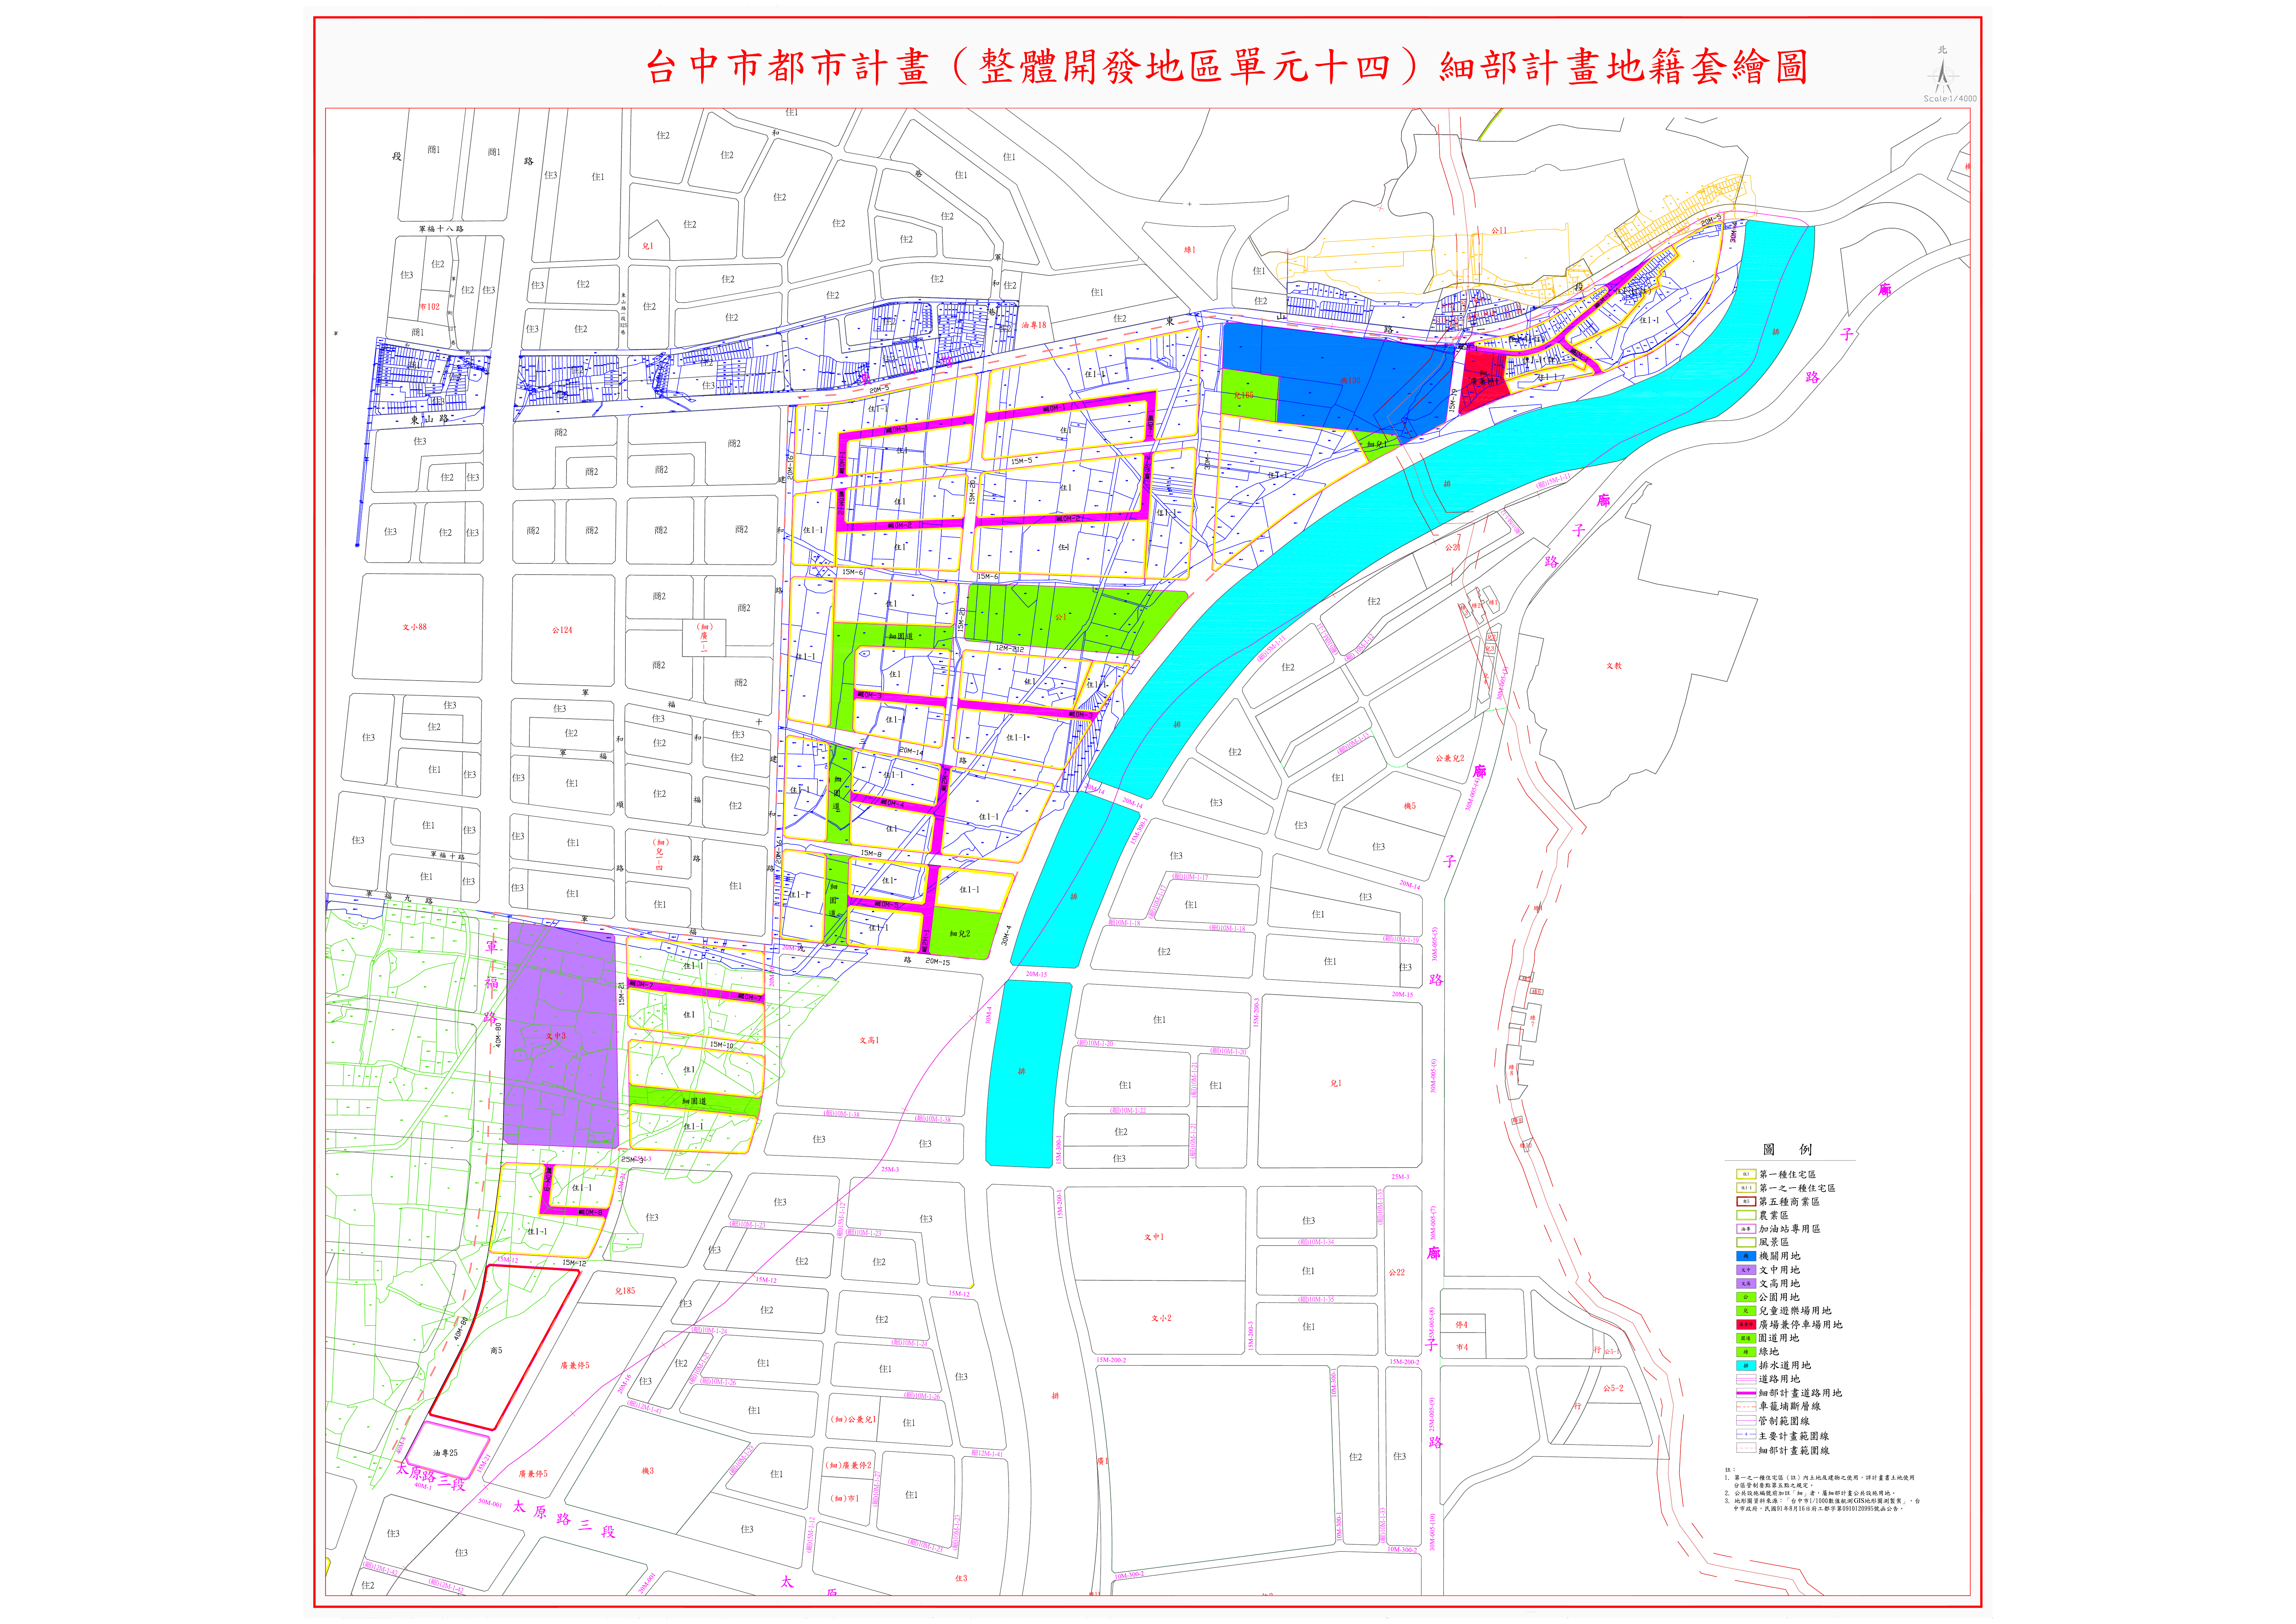 整體開發地區單元十四都市計畫細部計畫圖